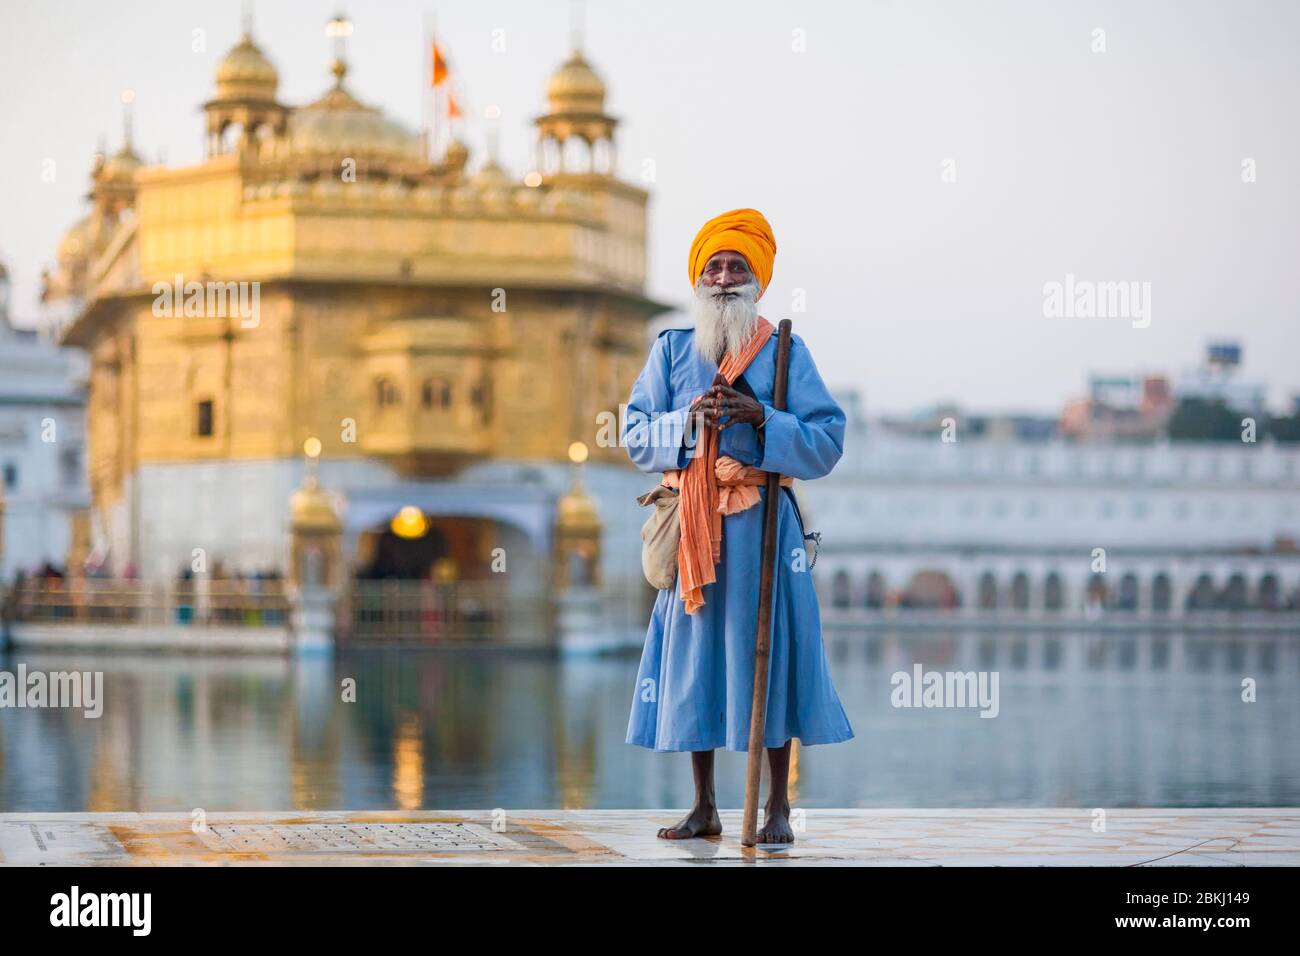 Indien, Punjab Staat, Amritsar, Harmandir Sahib, ganzheitliches Porträt eines Sikh Mannes und Goldener Tempel im Hintergrund, heiliger Ort des Sikhismus Stockfoto